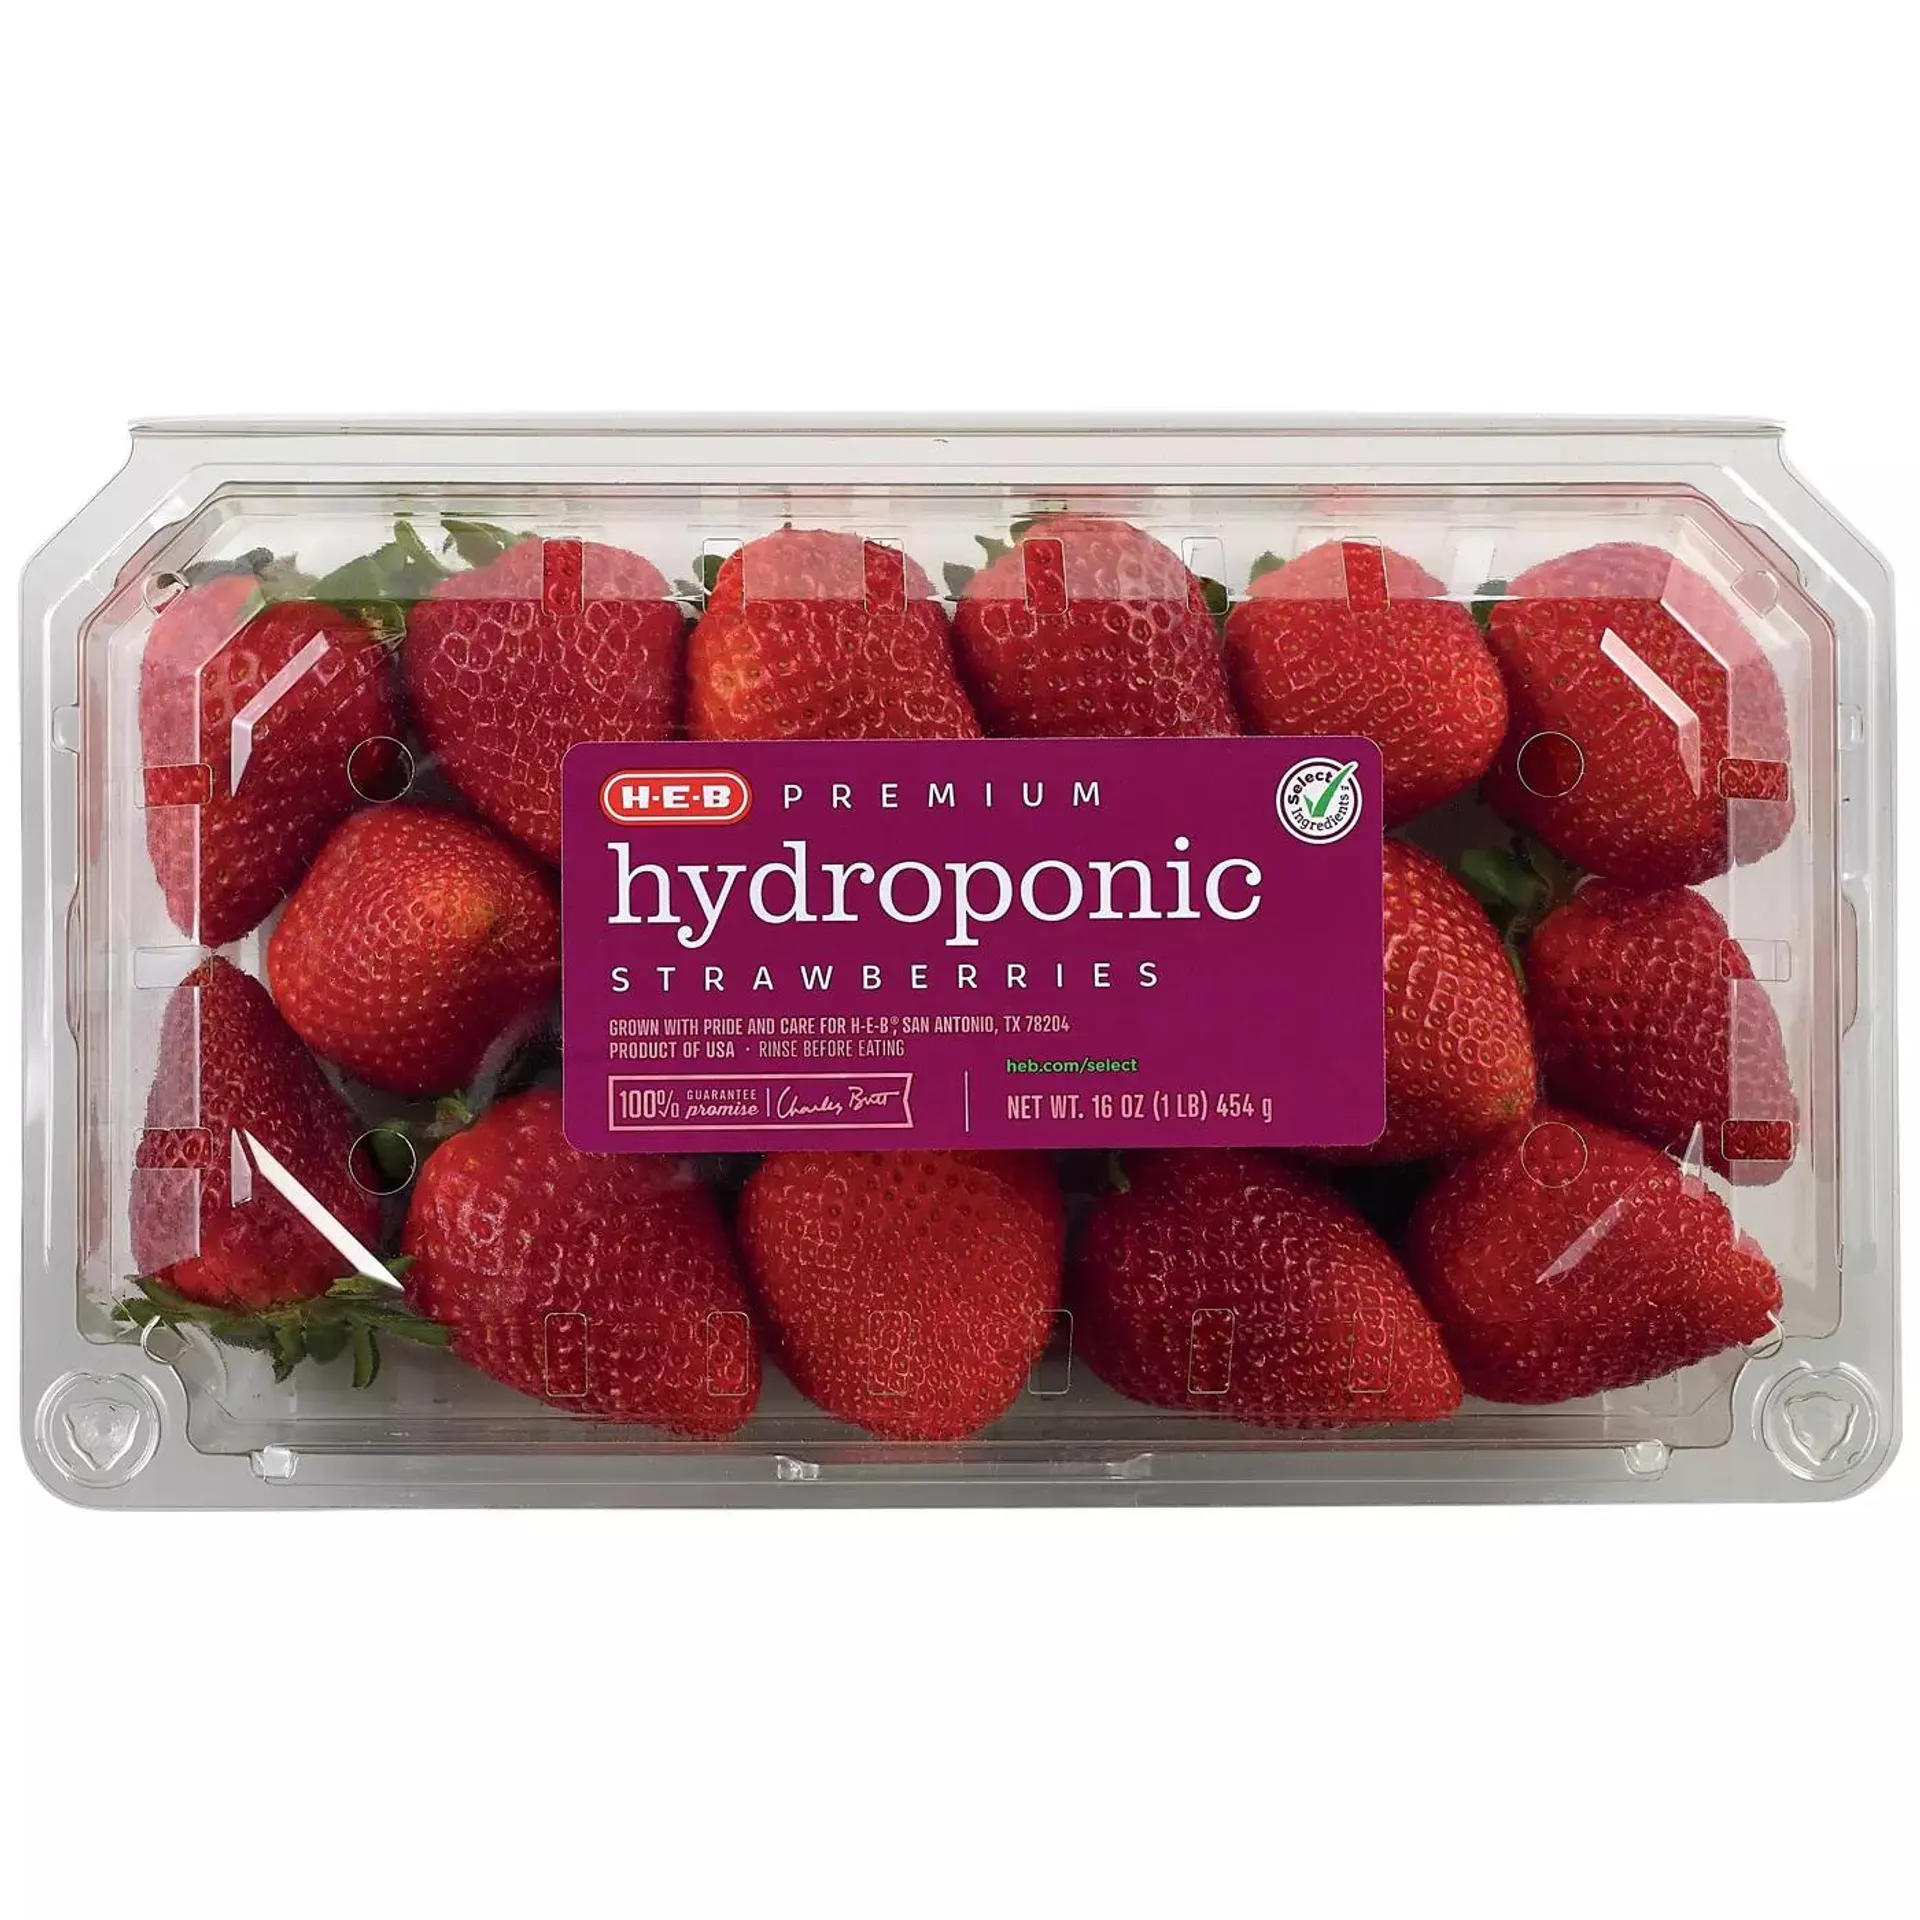 H‑E‑B Premium Hydroponic Strawberries